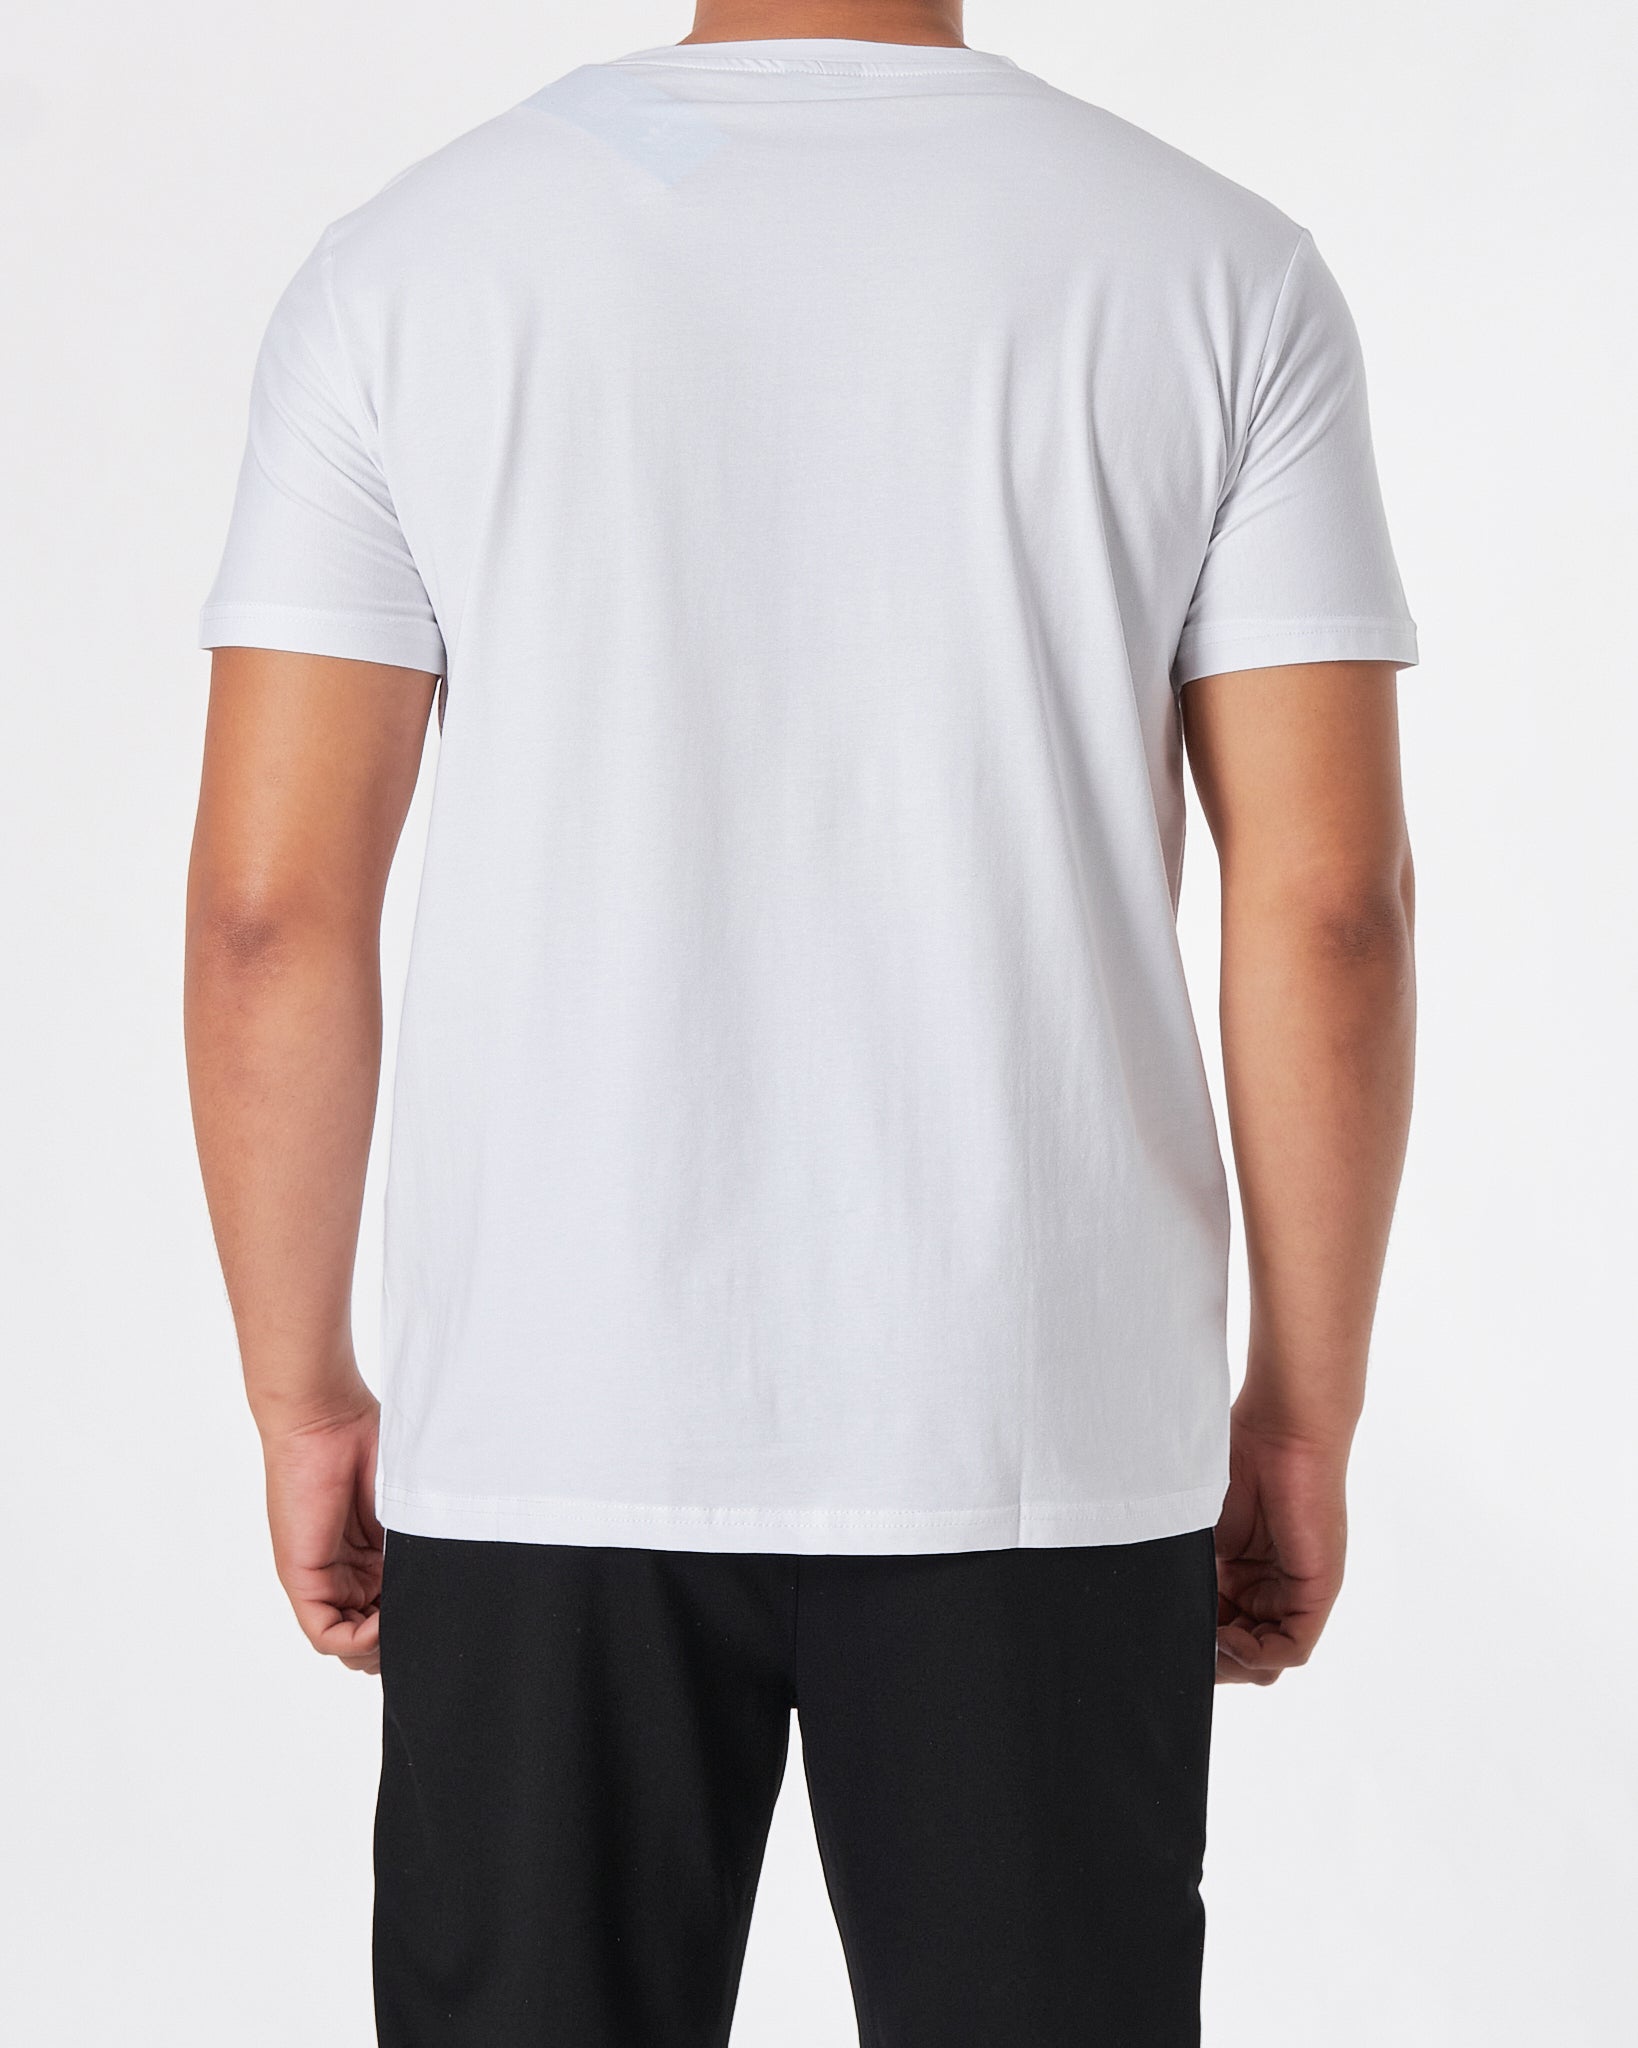 ADI Inter Logo Printed Men White T-Shirt 15.90